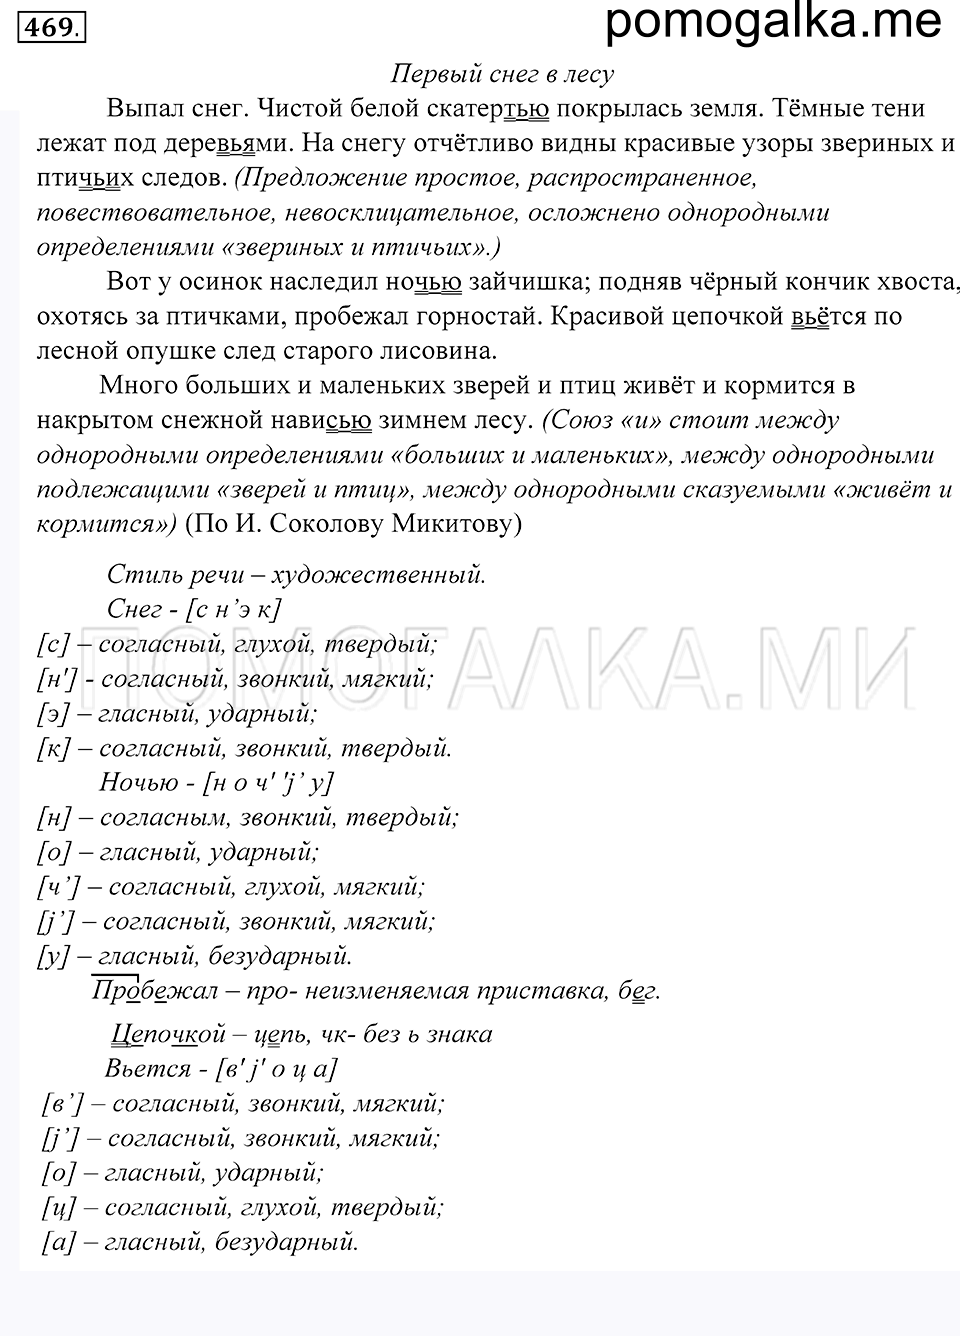 упражнение 469 русский язык 5 класс Купалова 2012 год